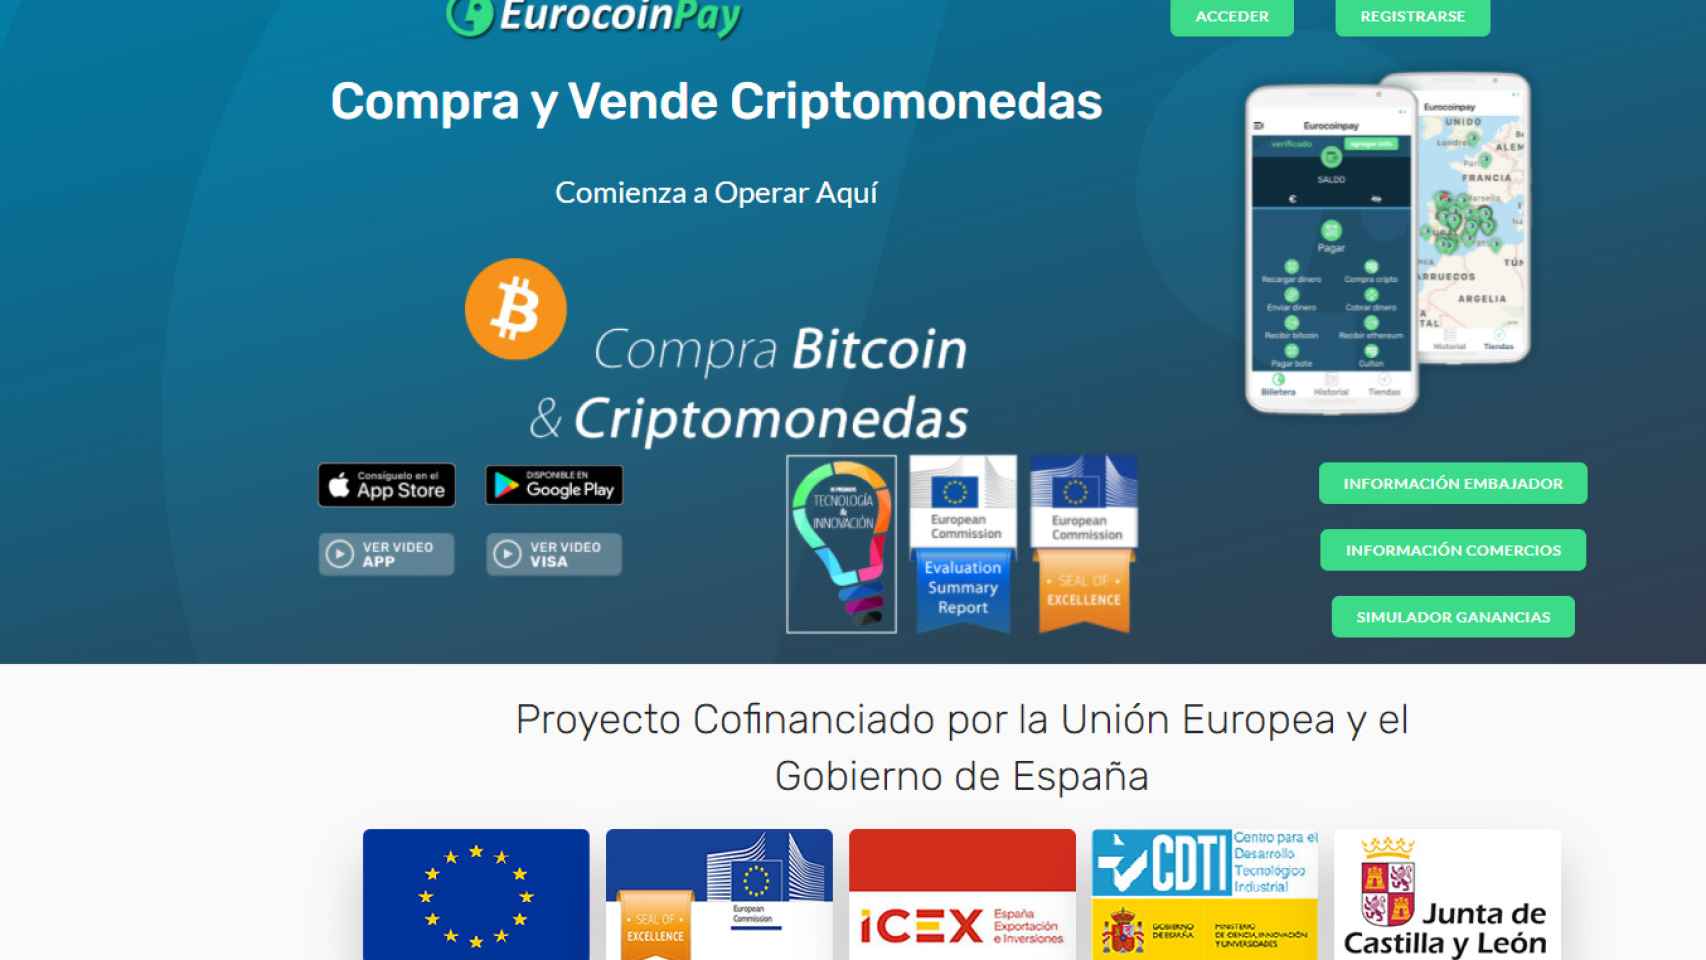 Página web de Eurocoinpay